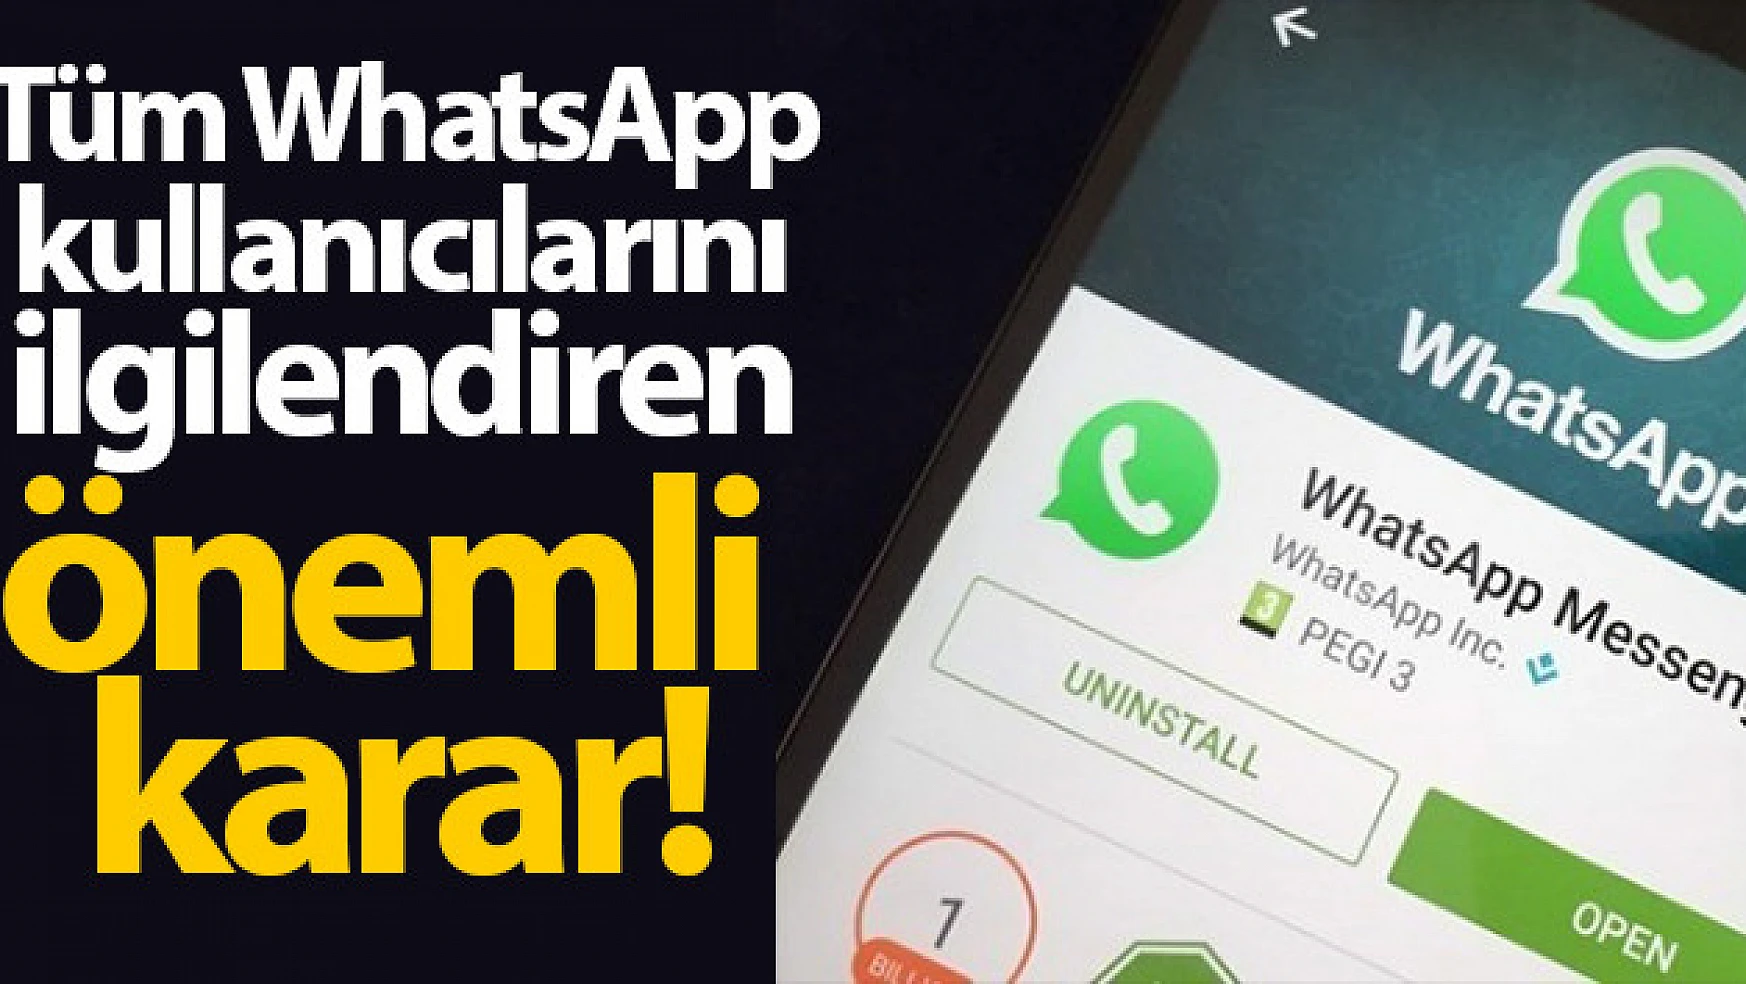  WhatsApp kullanıcılarını ilgilendiren flaş karar!